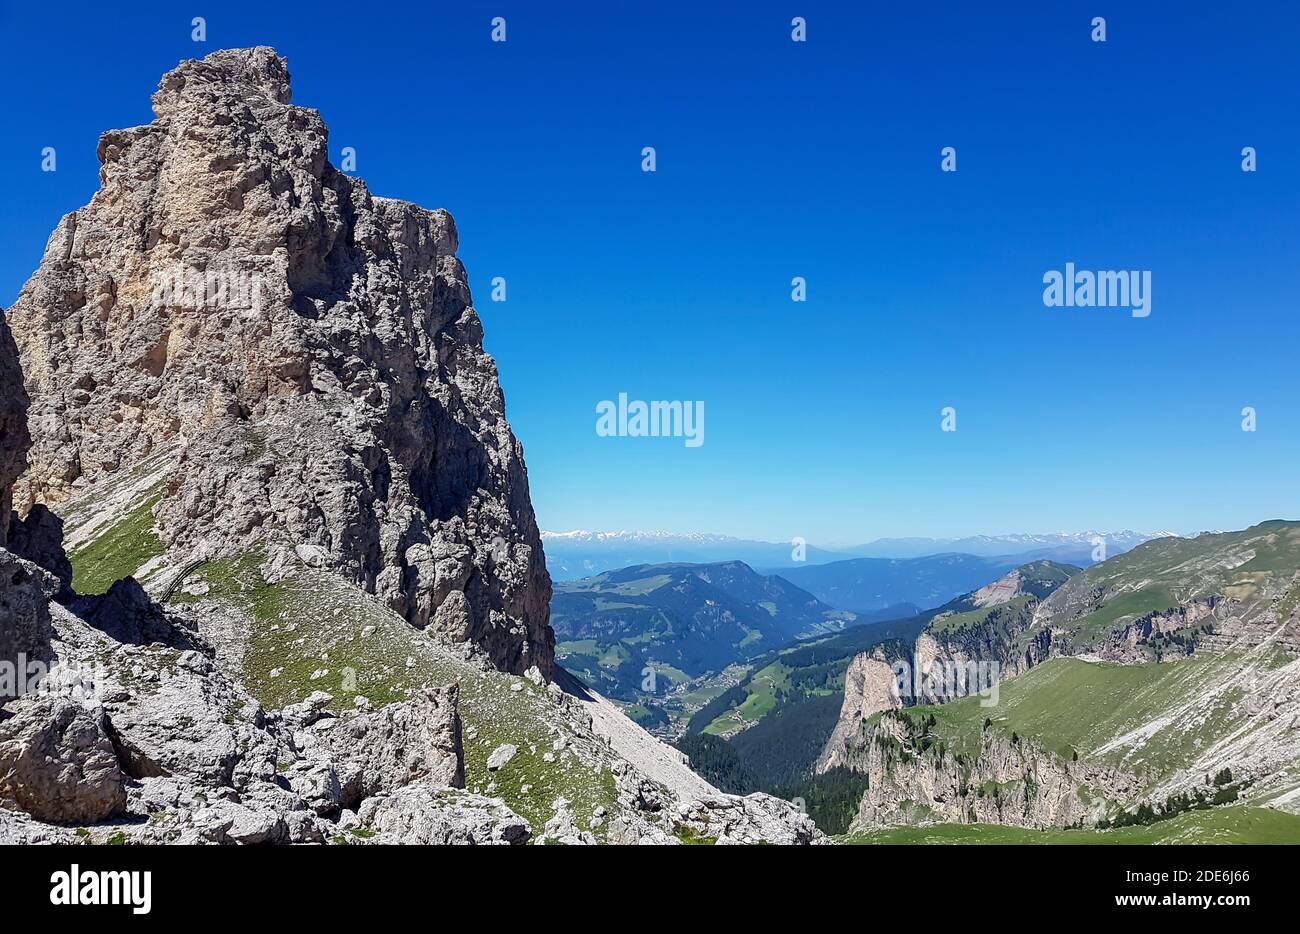 Grande roccia sulla cima di amountain in alpe tirolo con cielo estivo blu Foto Stock